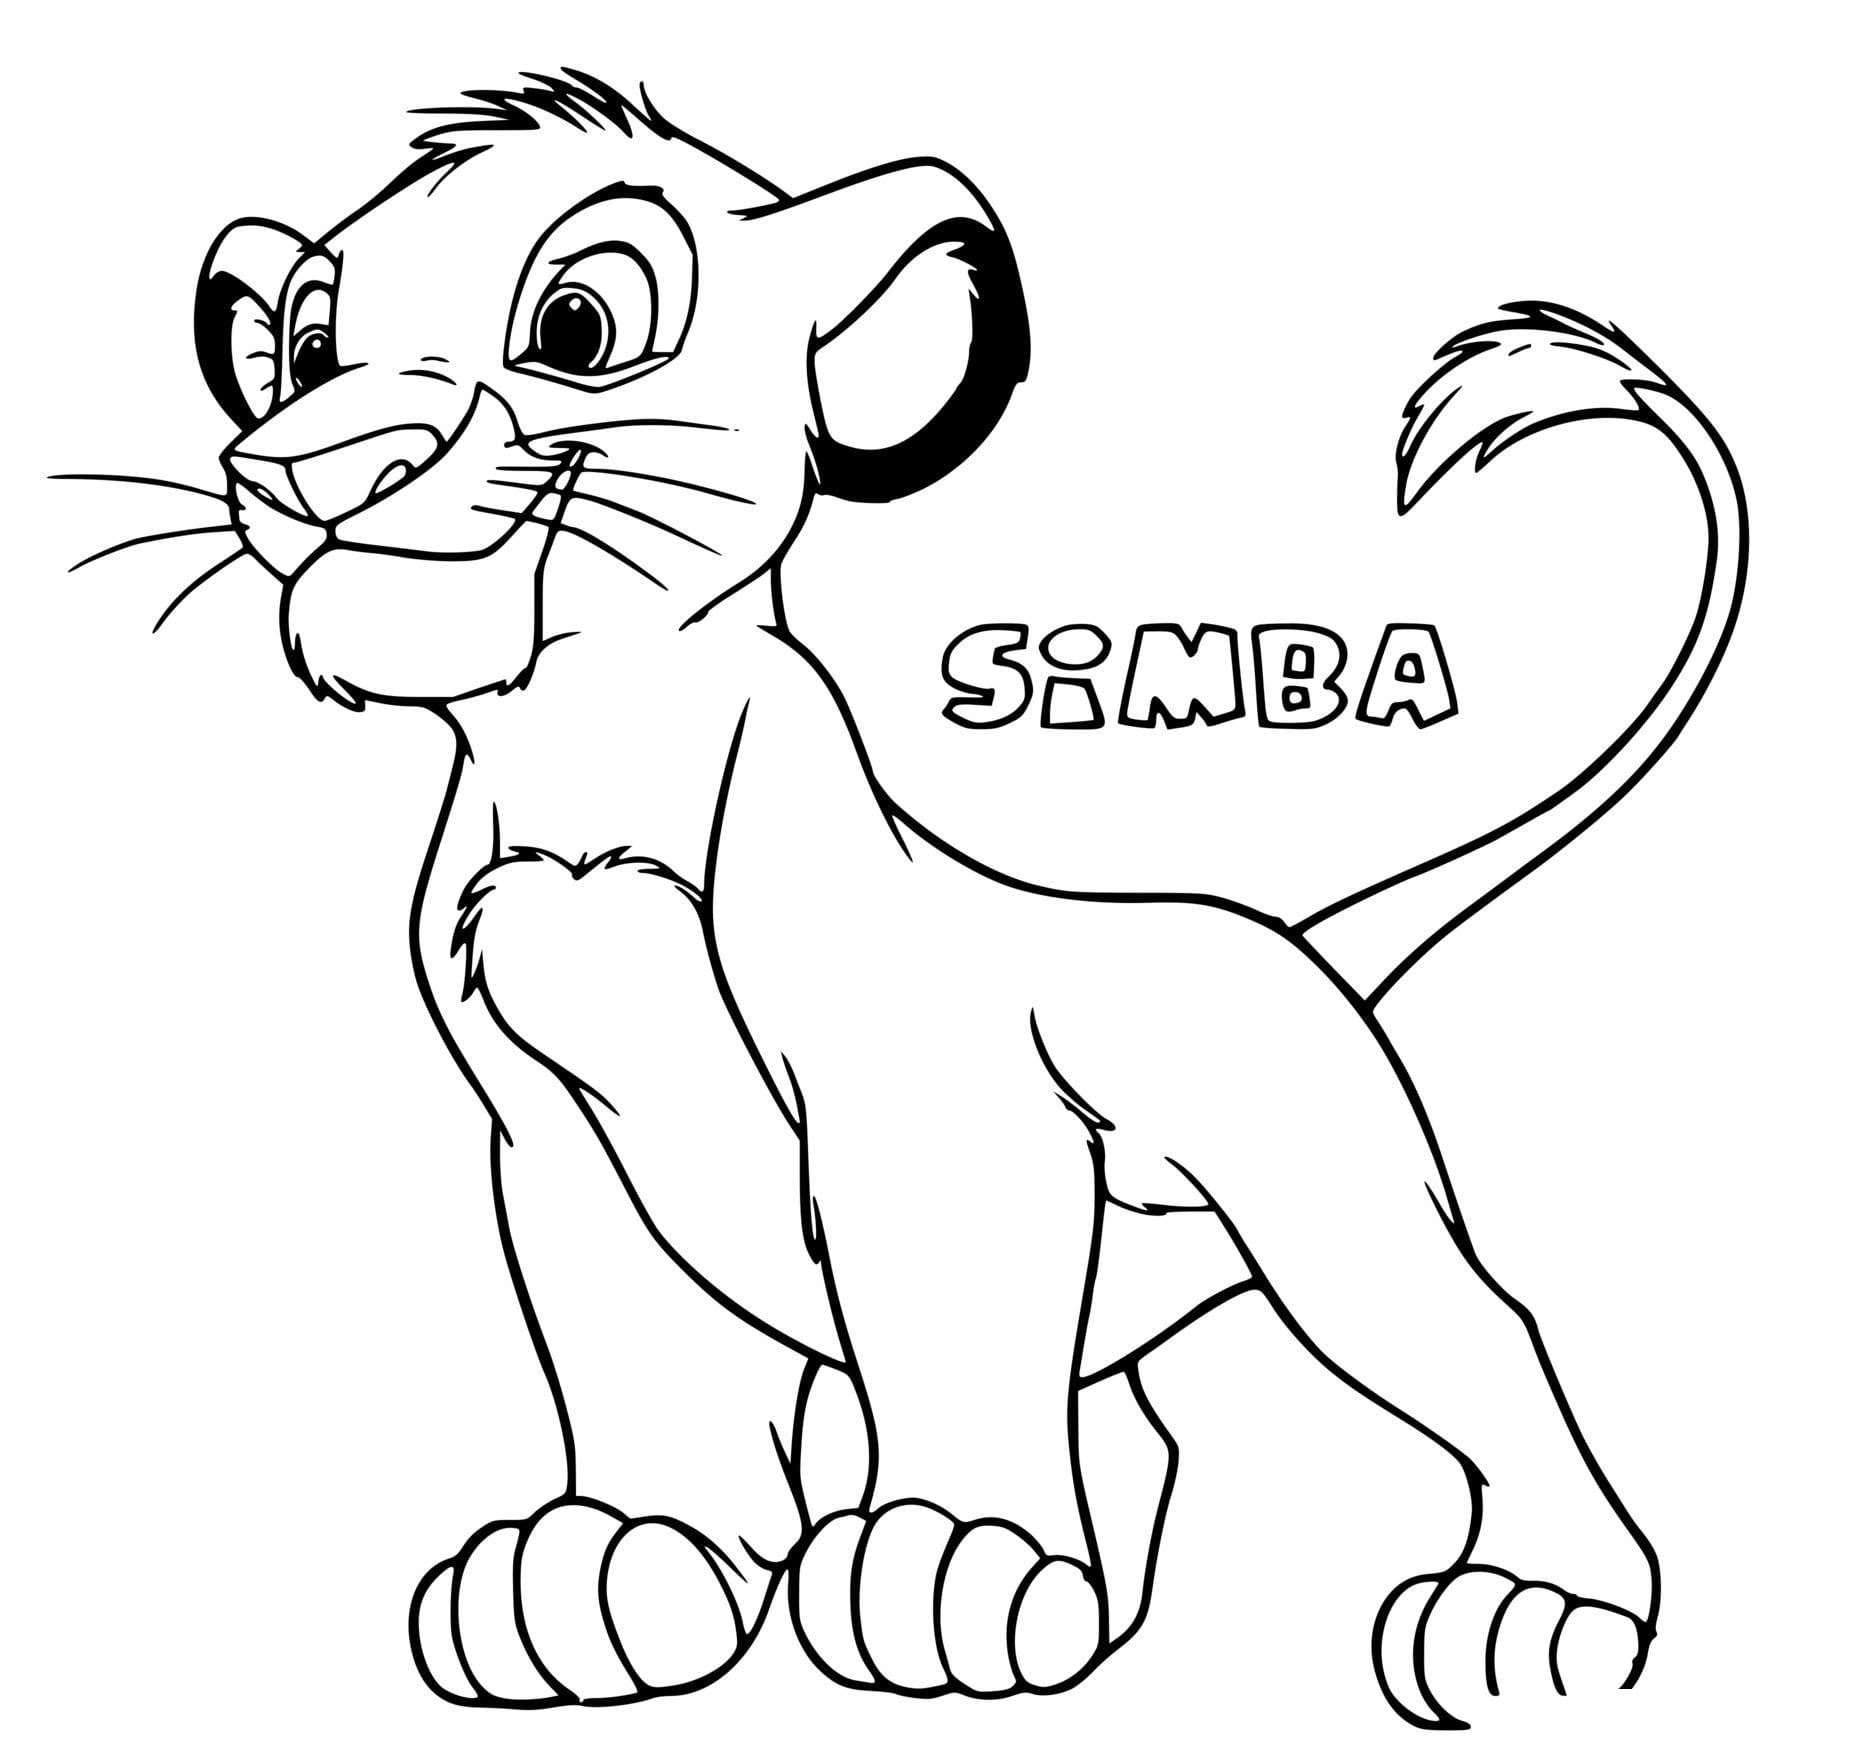 Simba Pour Enfants coloring page